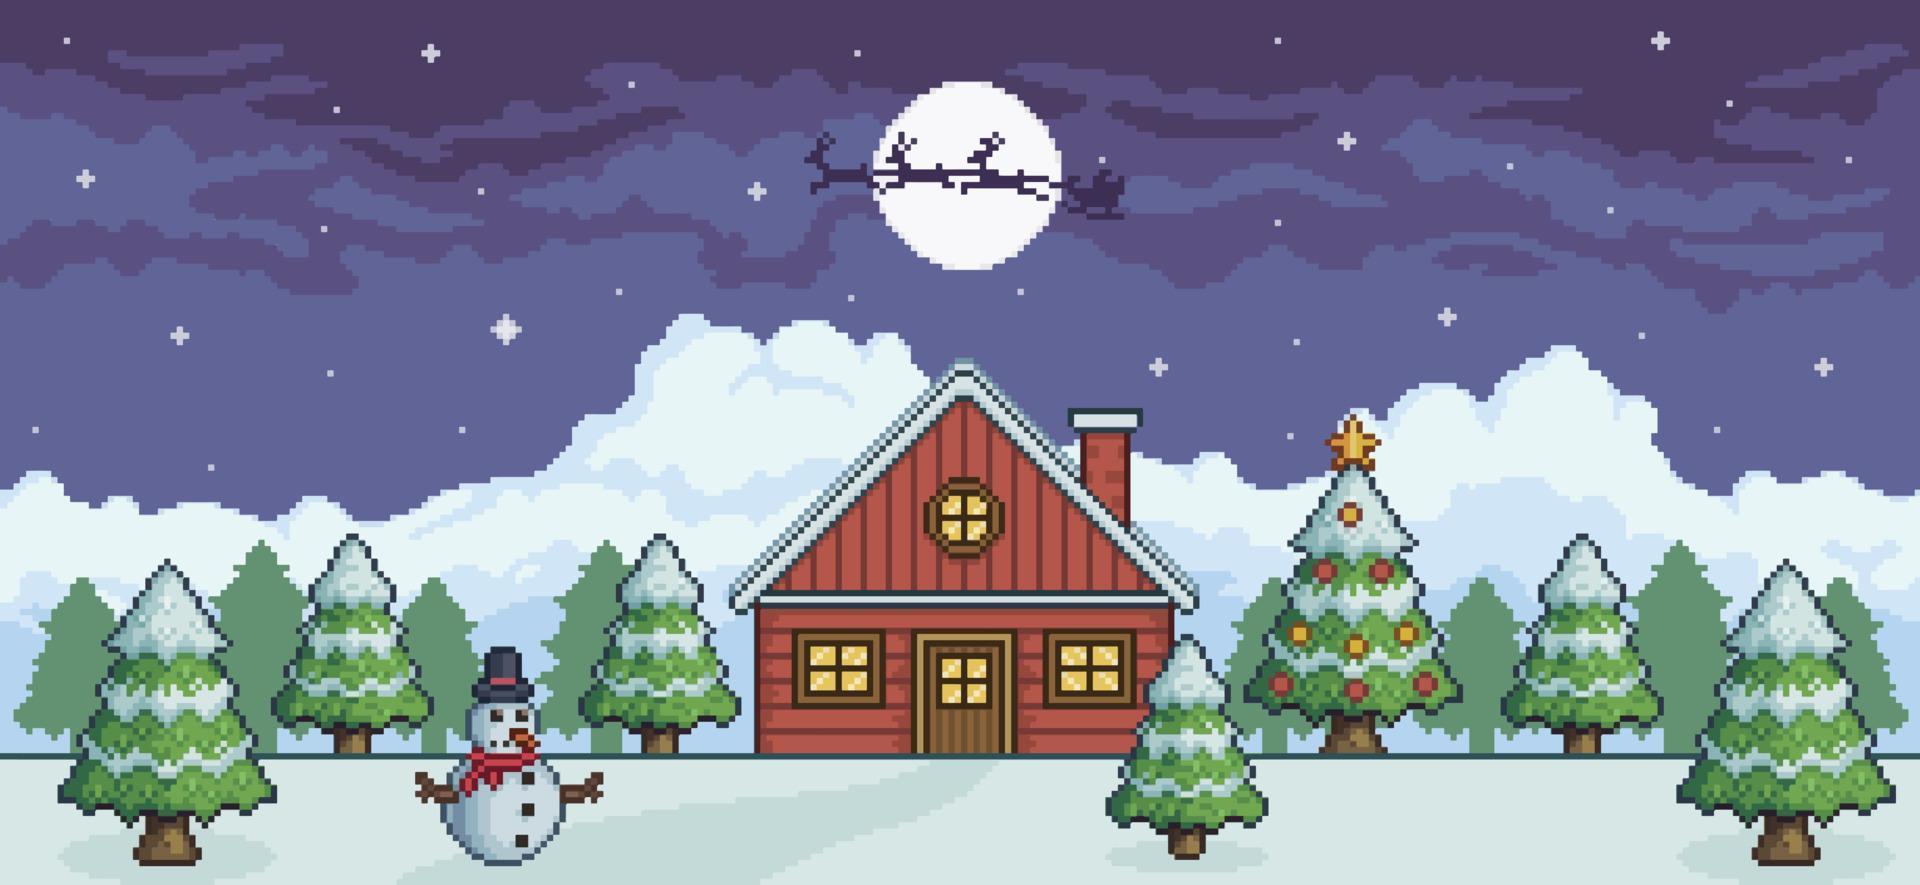 pixel konst jul landskap på natt med röd hus, jul träd, snögubbe, santa claus, tall träd och snö 8 bit spel bakgrund vektor